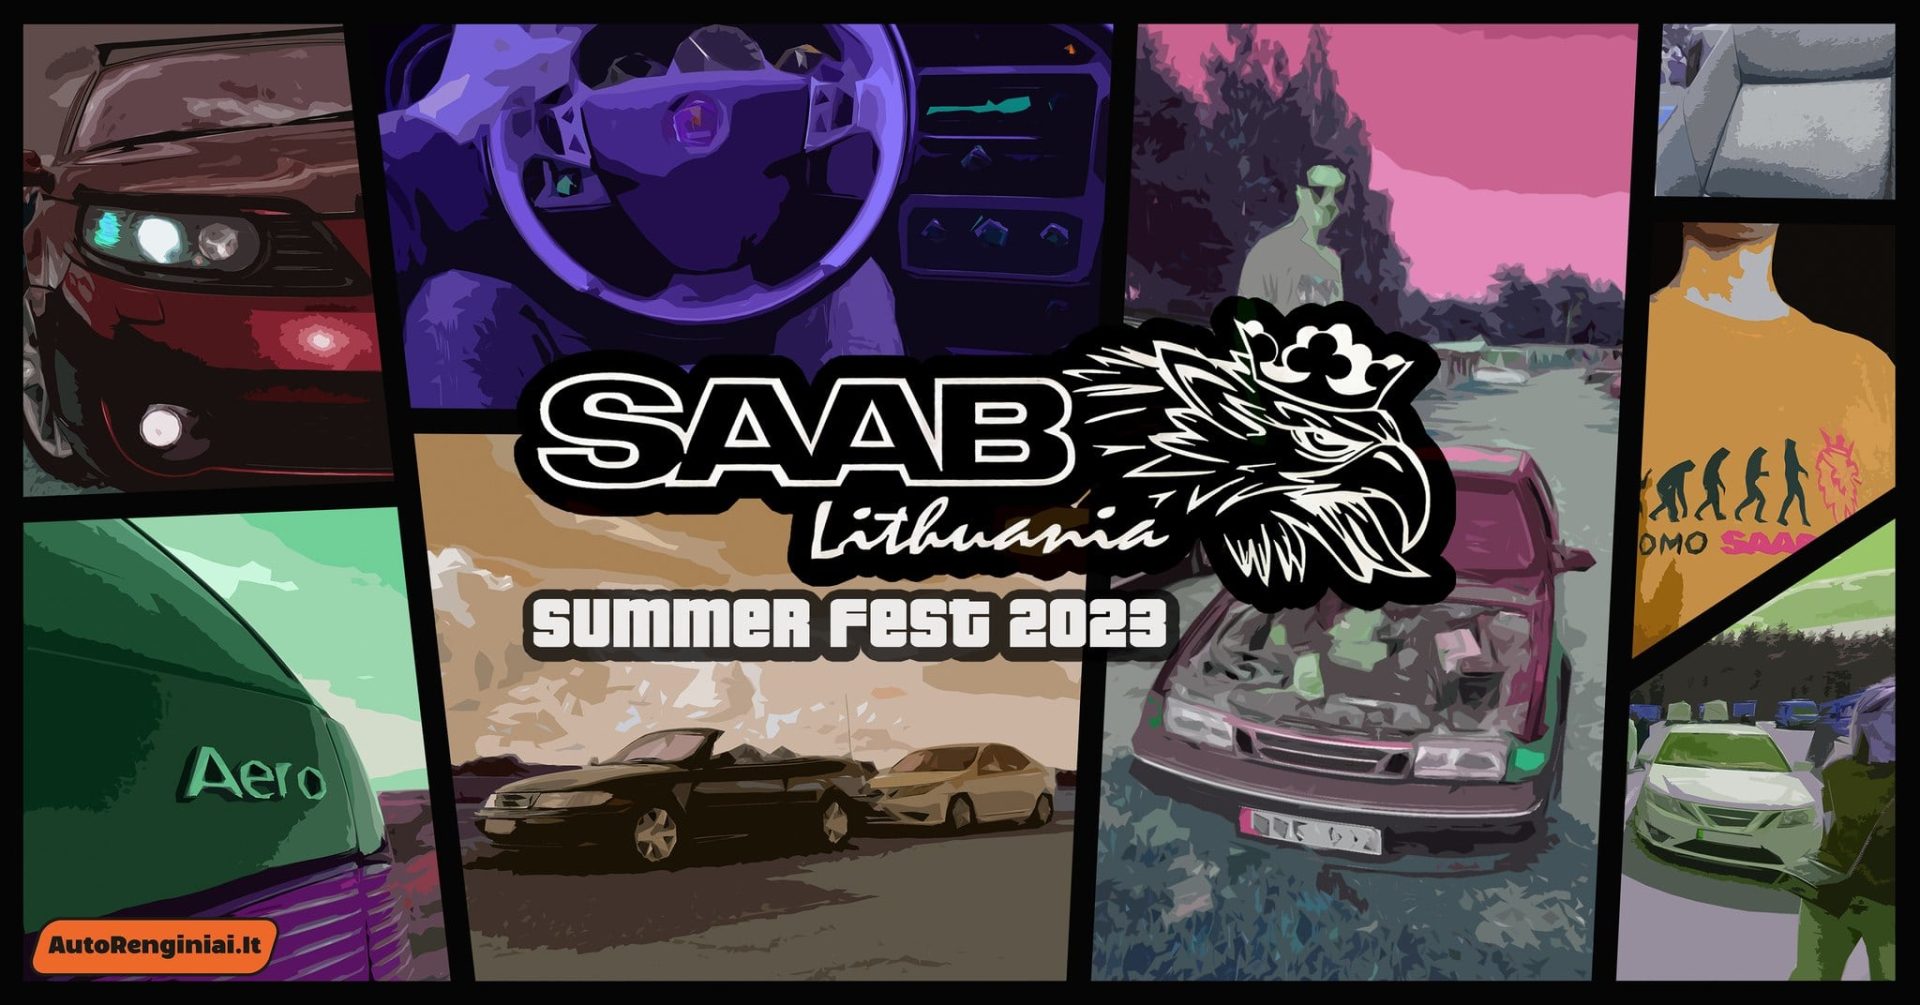 SAAB Lithuania Summer Fest 2023